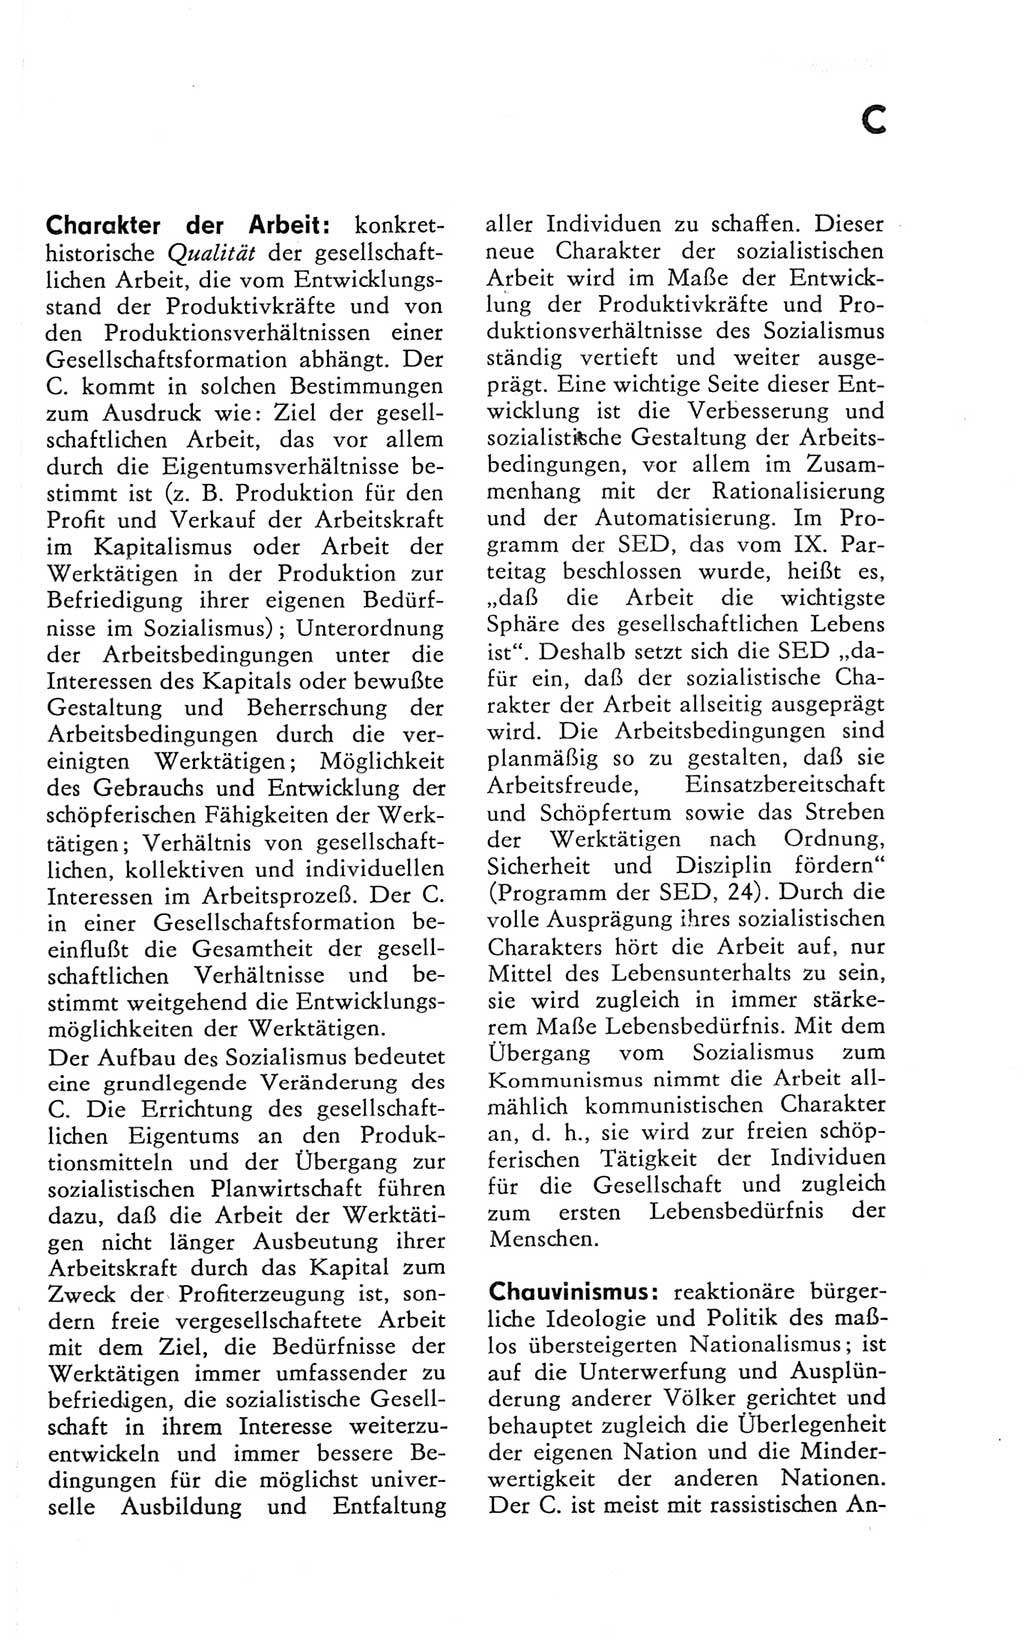 Kleines Wörterbuch der marxistisch-leninistischen Philosophie [Deutsche Demokratische Republik (DDR)] 1981, Seite 63 (Kl. Wb. ML Phil. DDR 1981, S. 63)